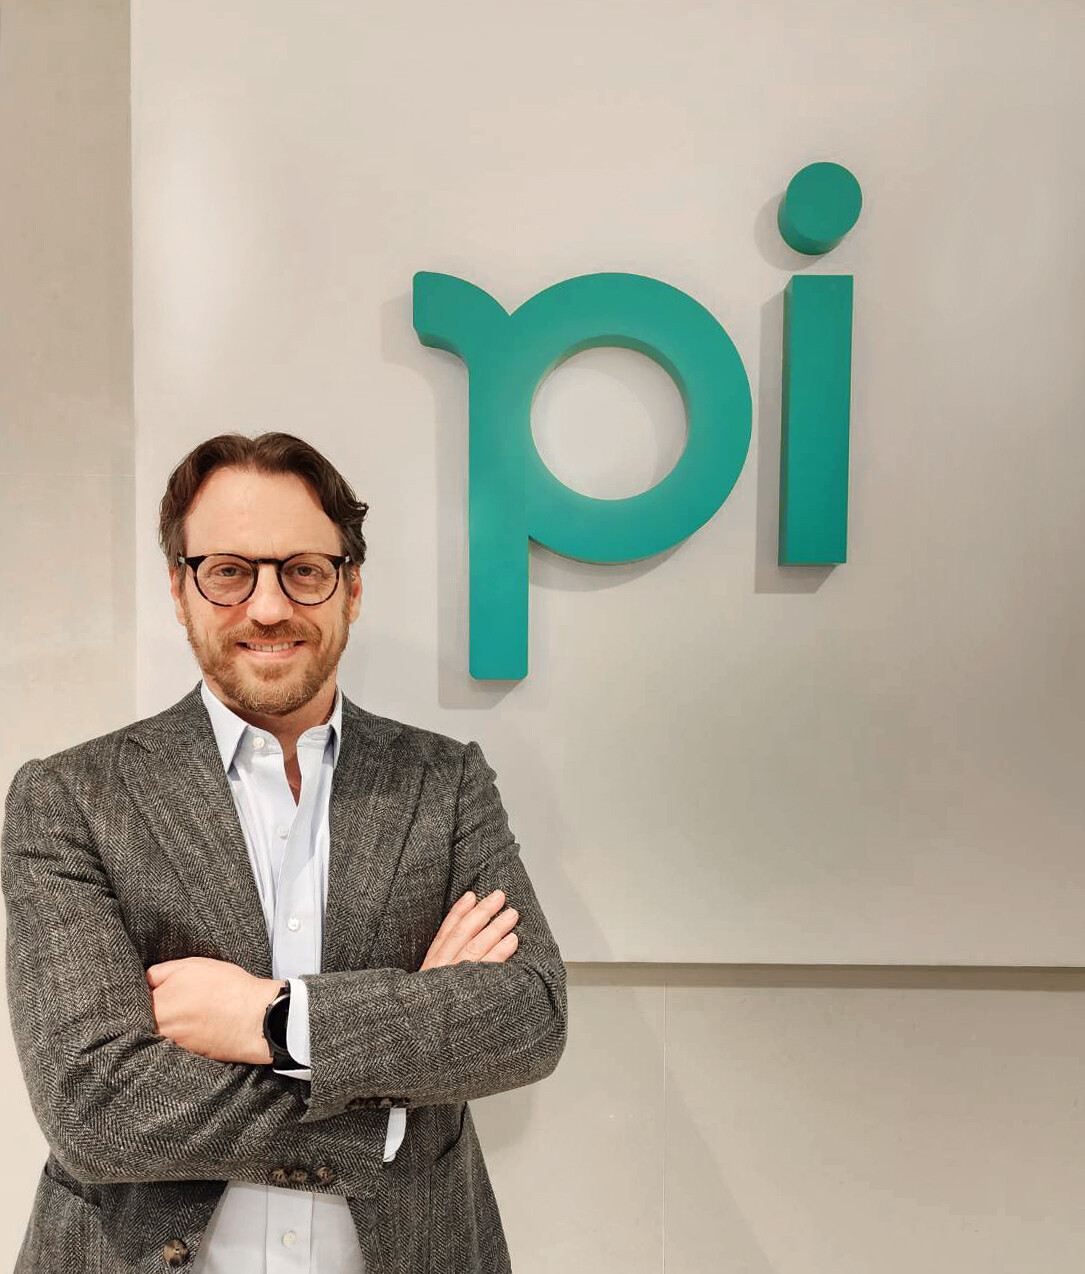 บล. พาย ต้อนรับ CEO คนใหม่ "บ๊อบ เวาเทอร์ส" พร้อมปลดล็อกศักยภาพของ Pi พลิกโฉมการเป็นผู้นำดิจิทัลทางการเงินเต็มรูปแบบ